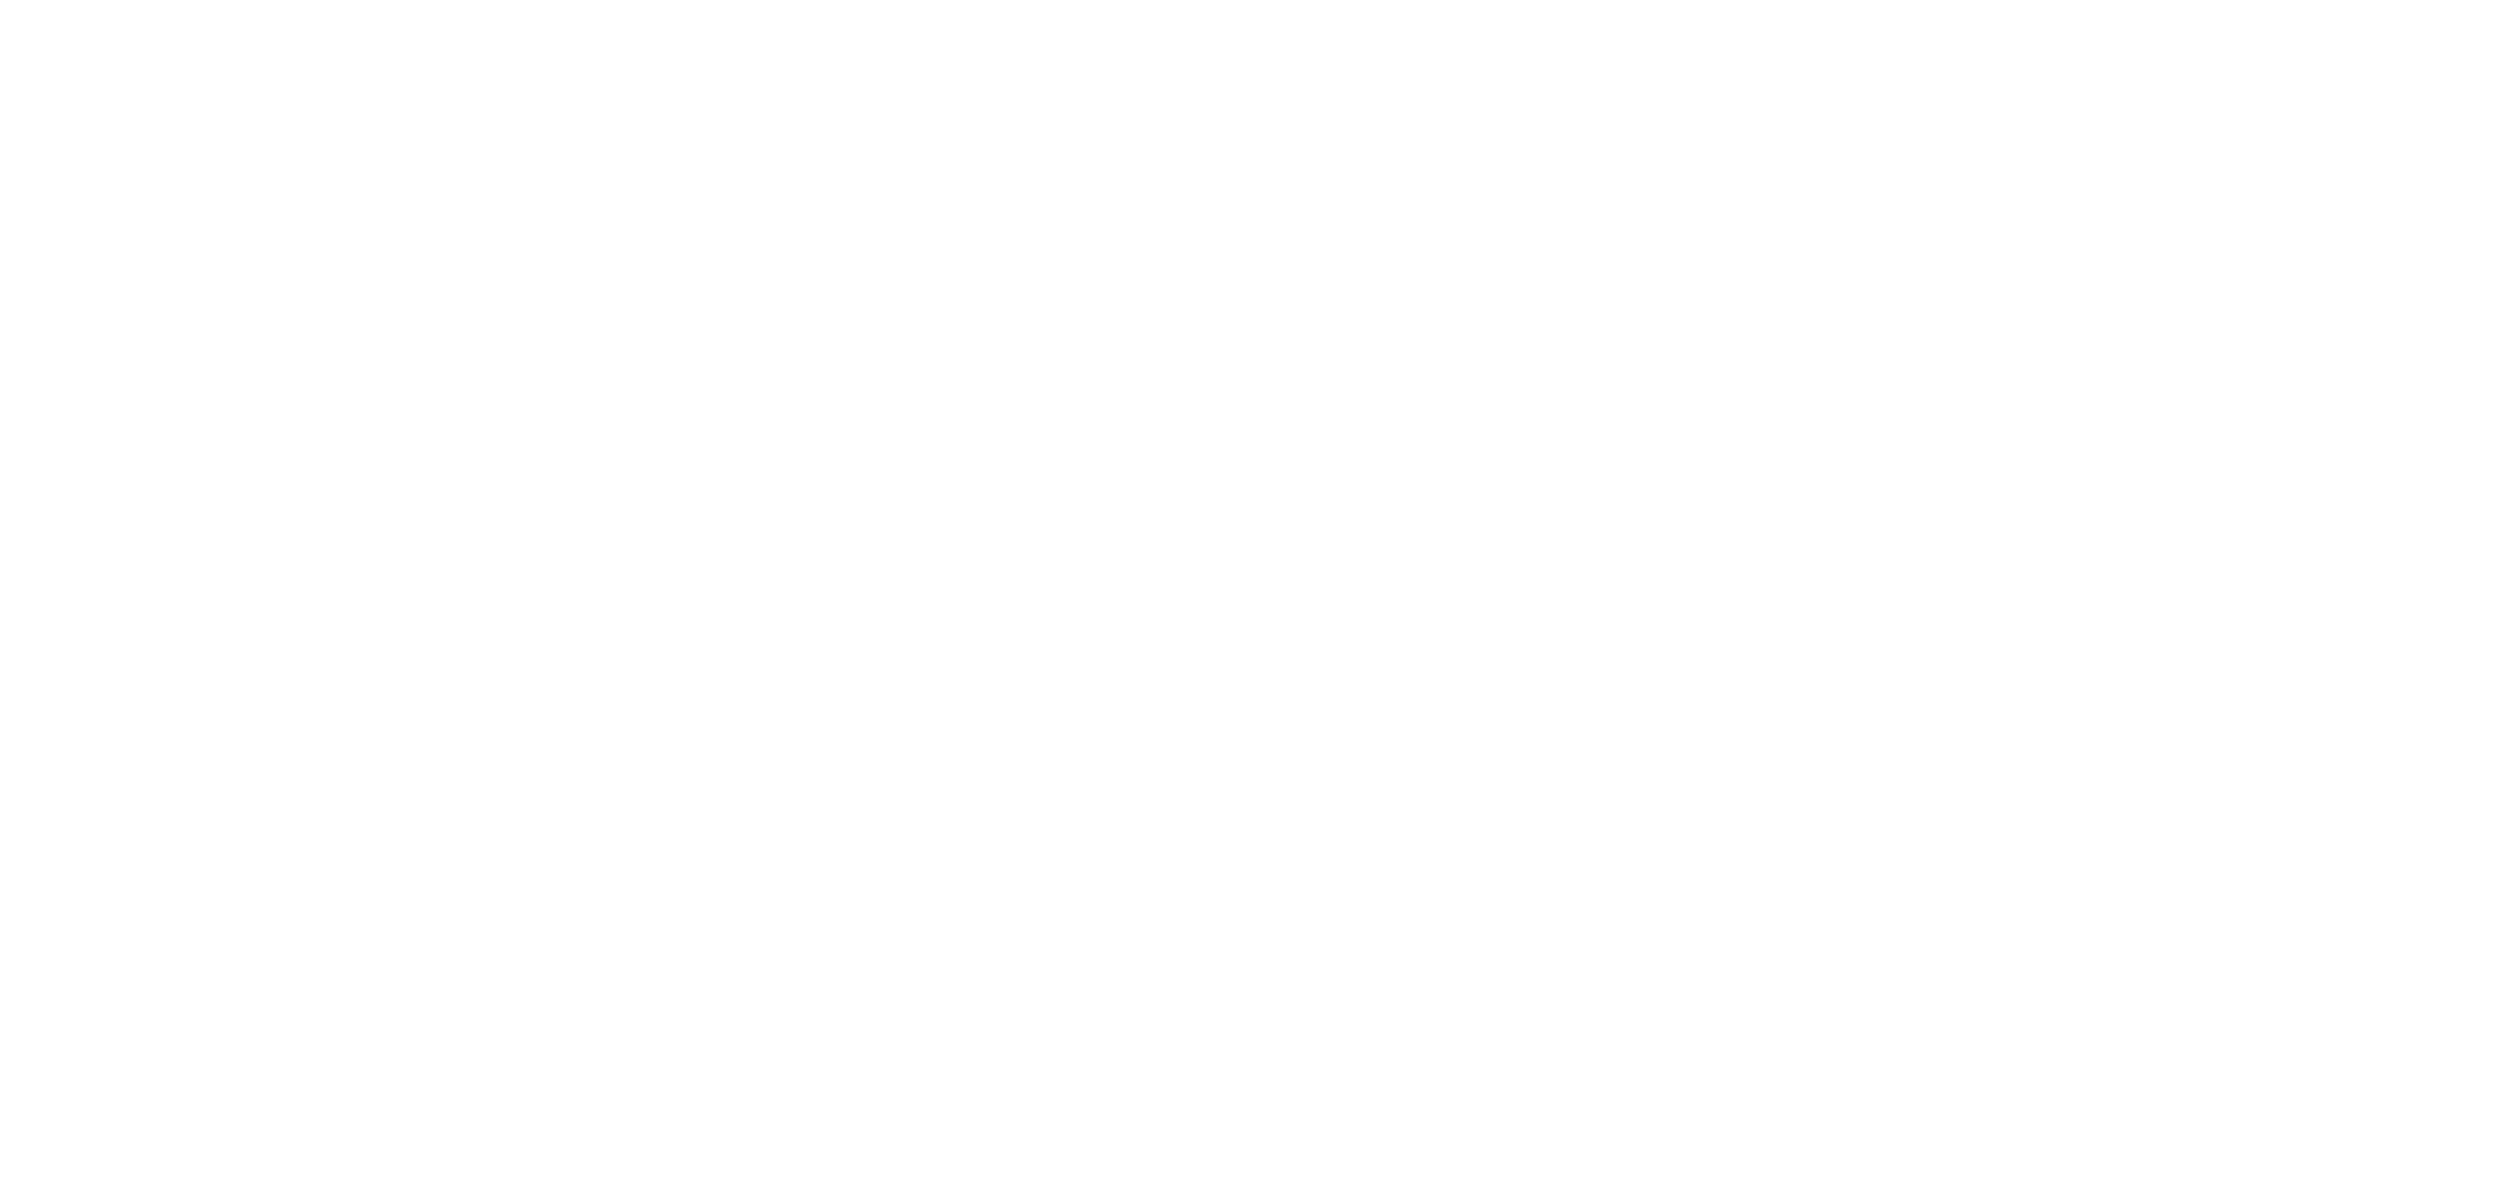 Skin Studio OKC